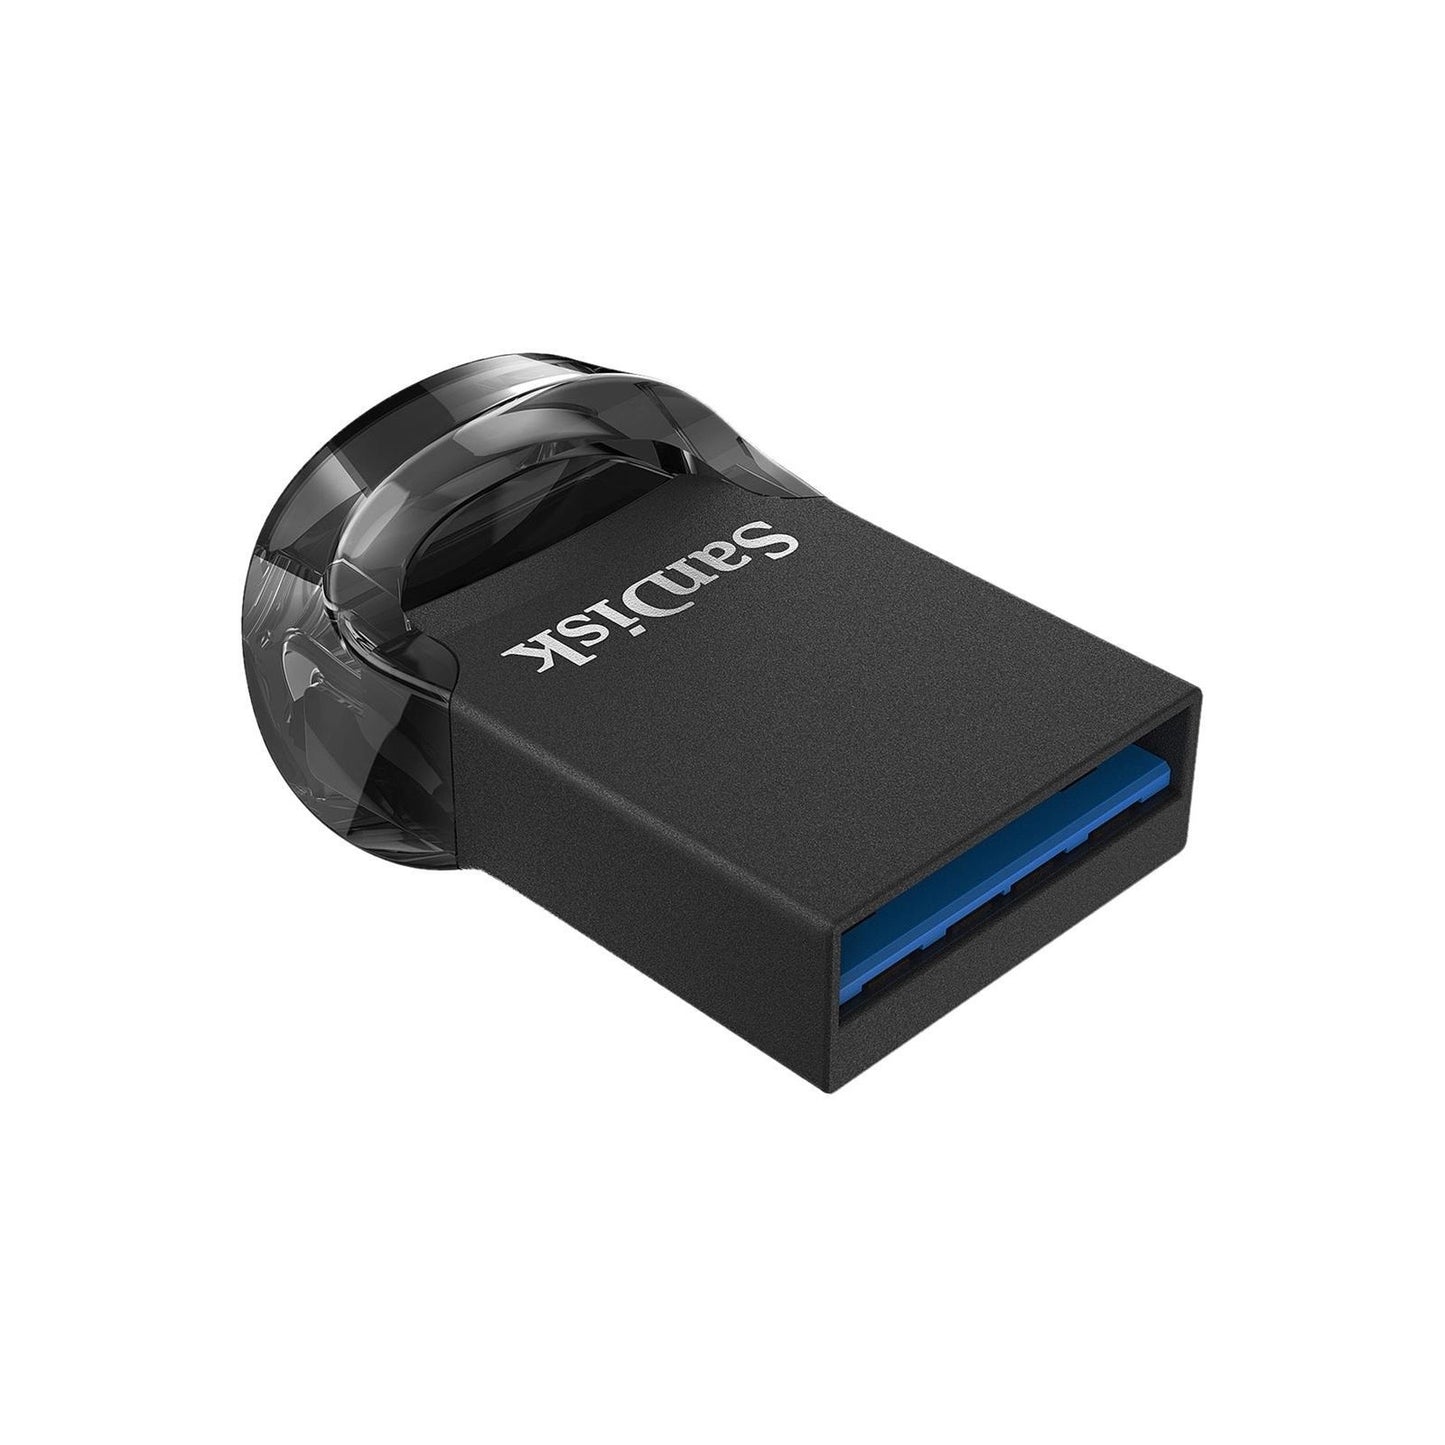 Sandisk Ultra Fit 512GB 130MB/S USB 3.1 Flash Drive Memory Stick Pen PC MAC